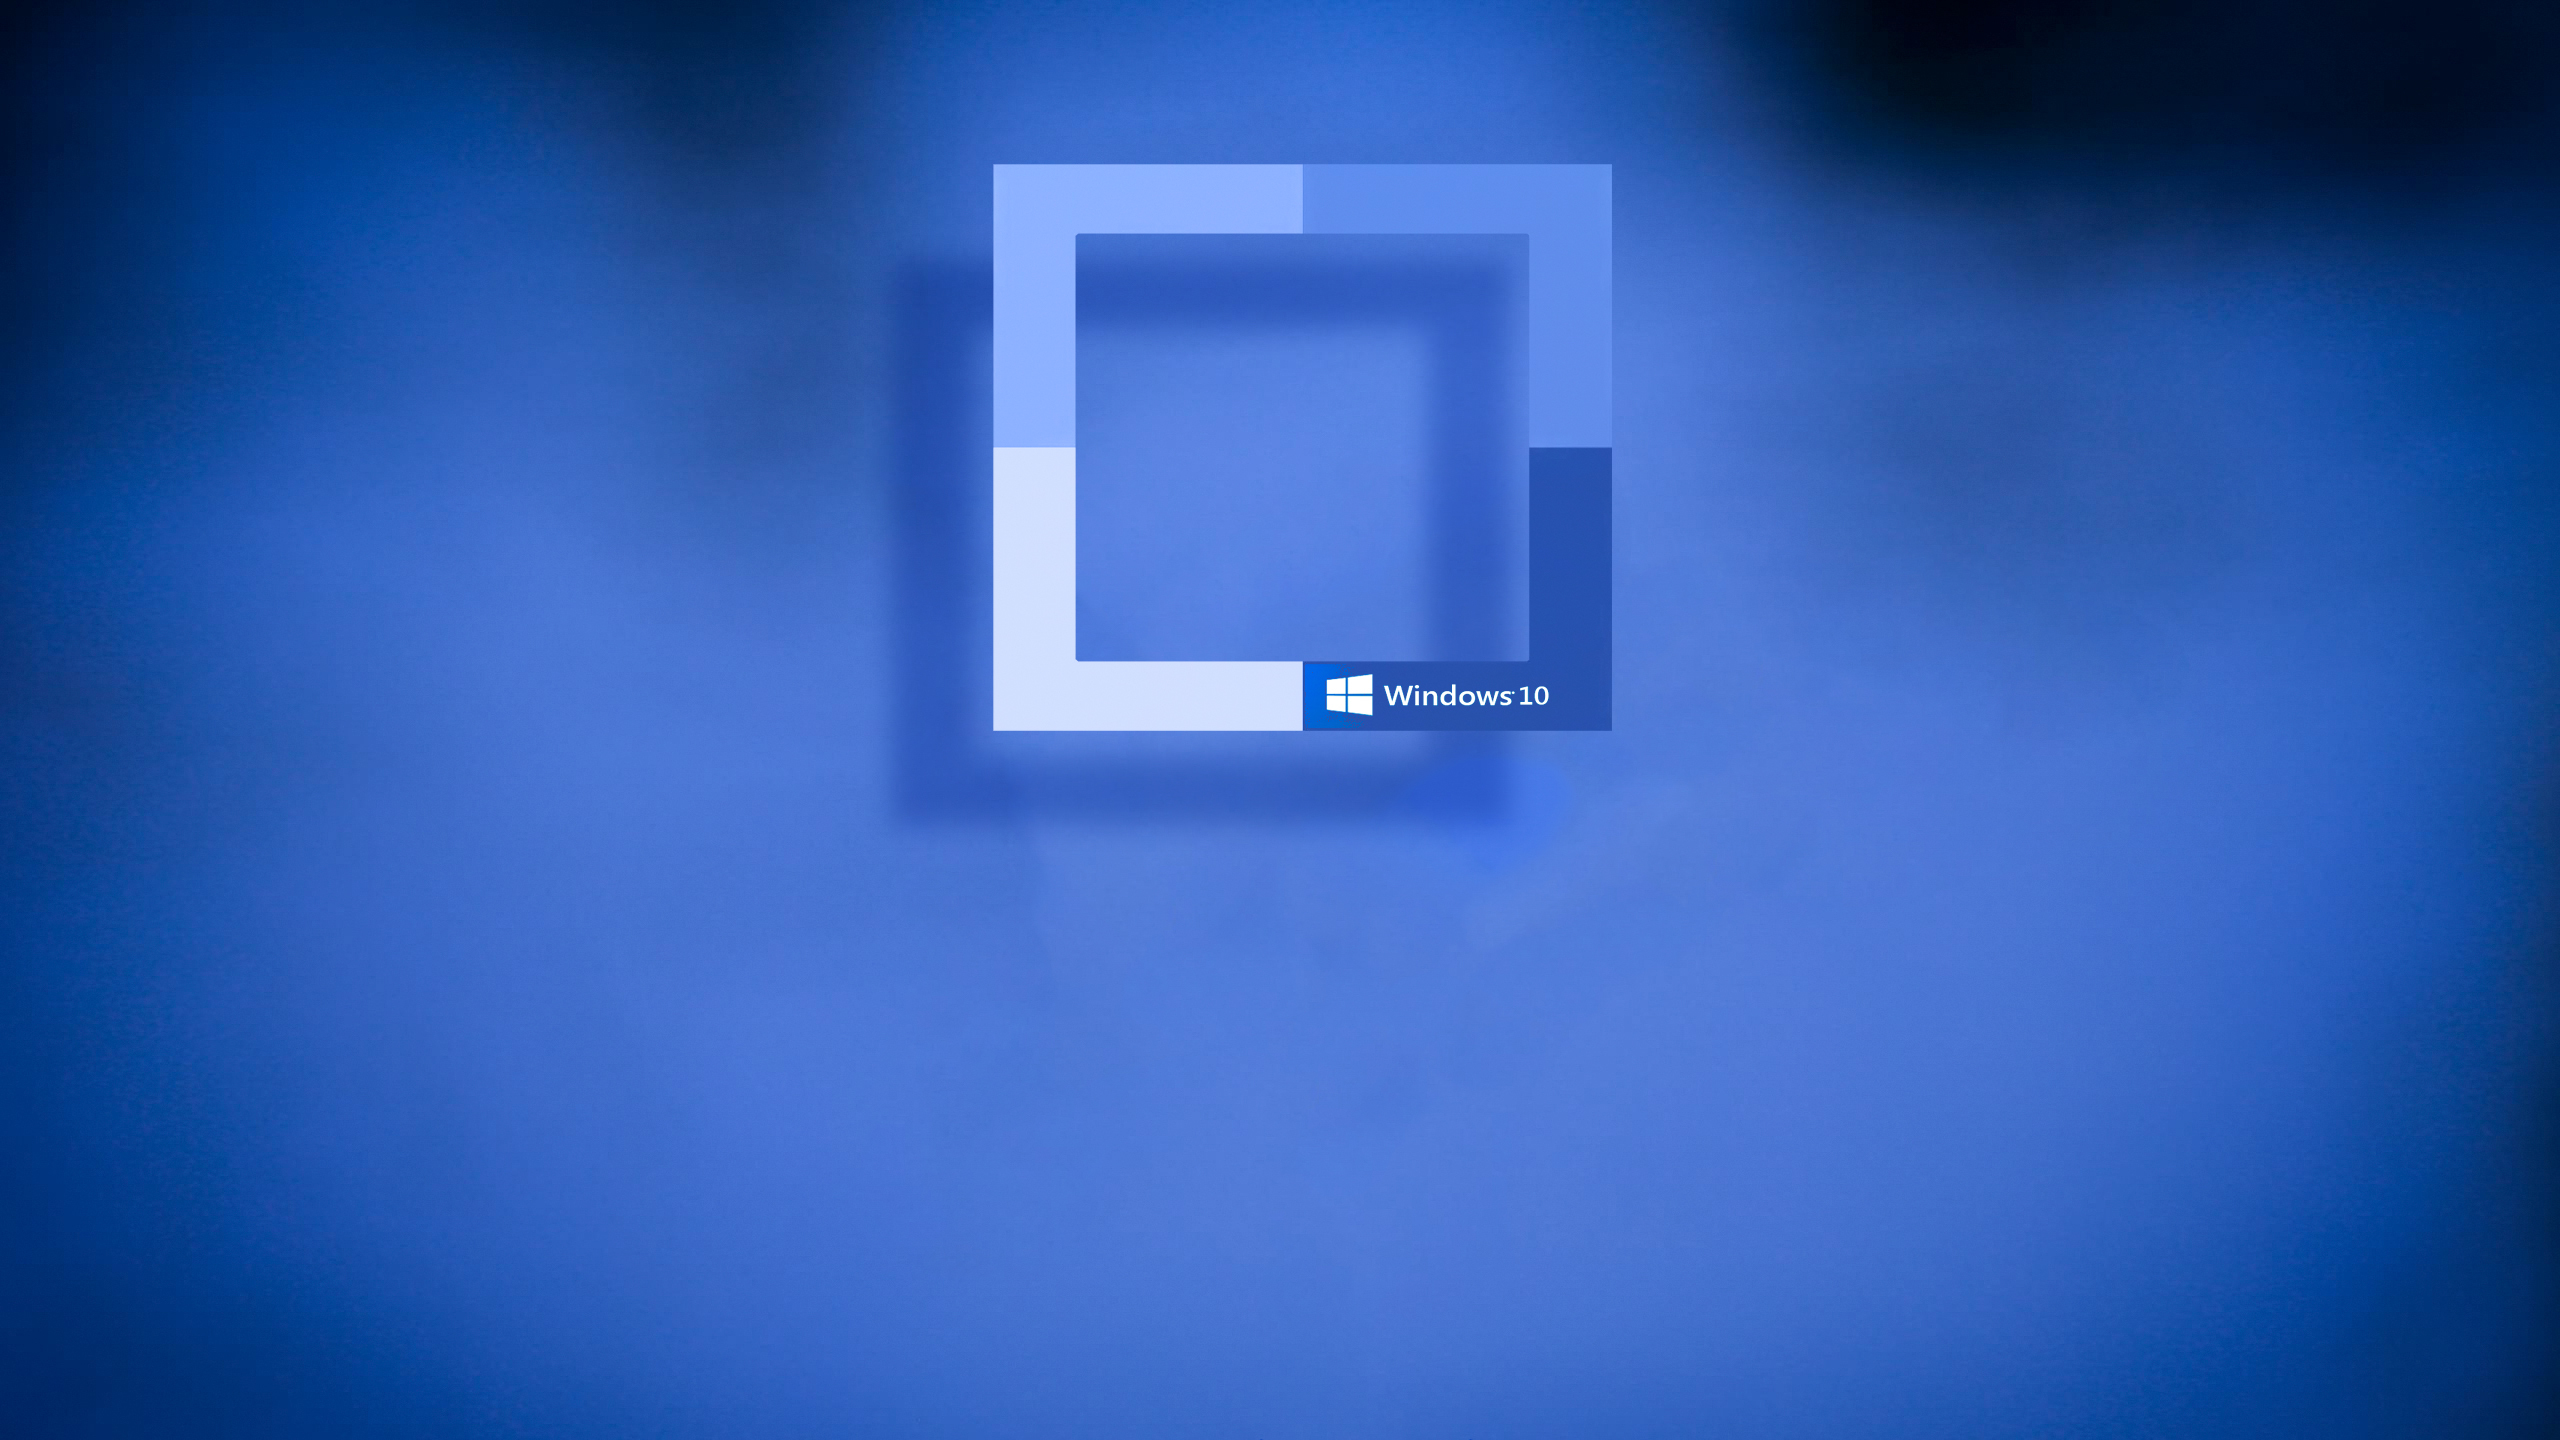 fonds d'écran hd pour windows 10,bleu,texte,bleu électrique,bleu cobalt,police de caractère